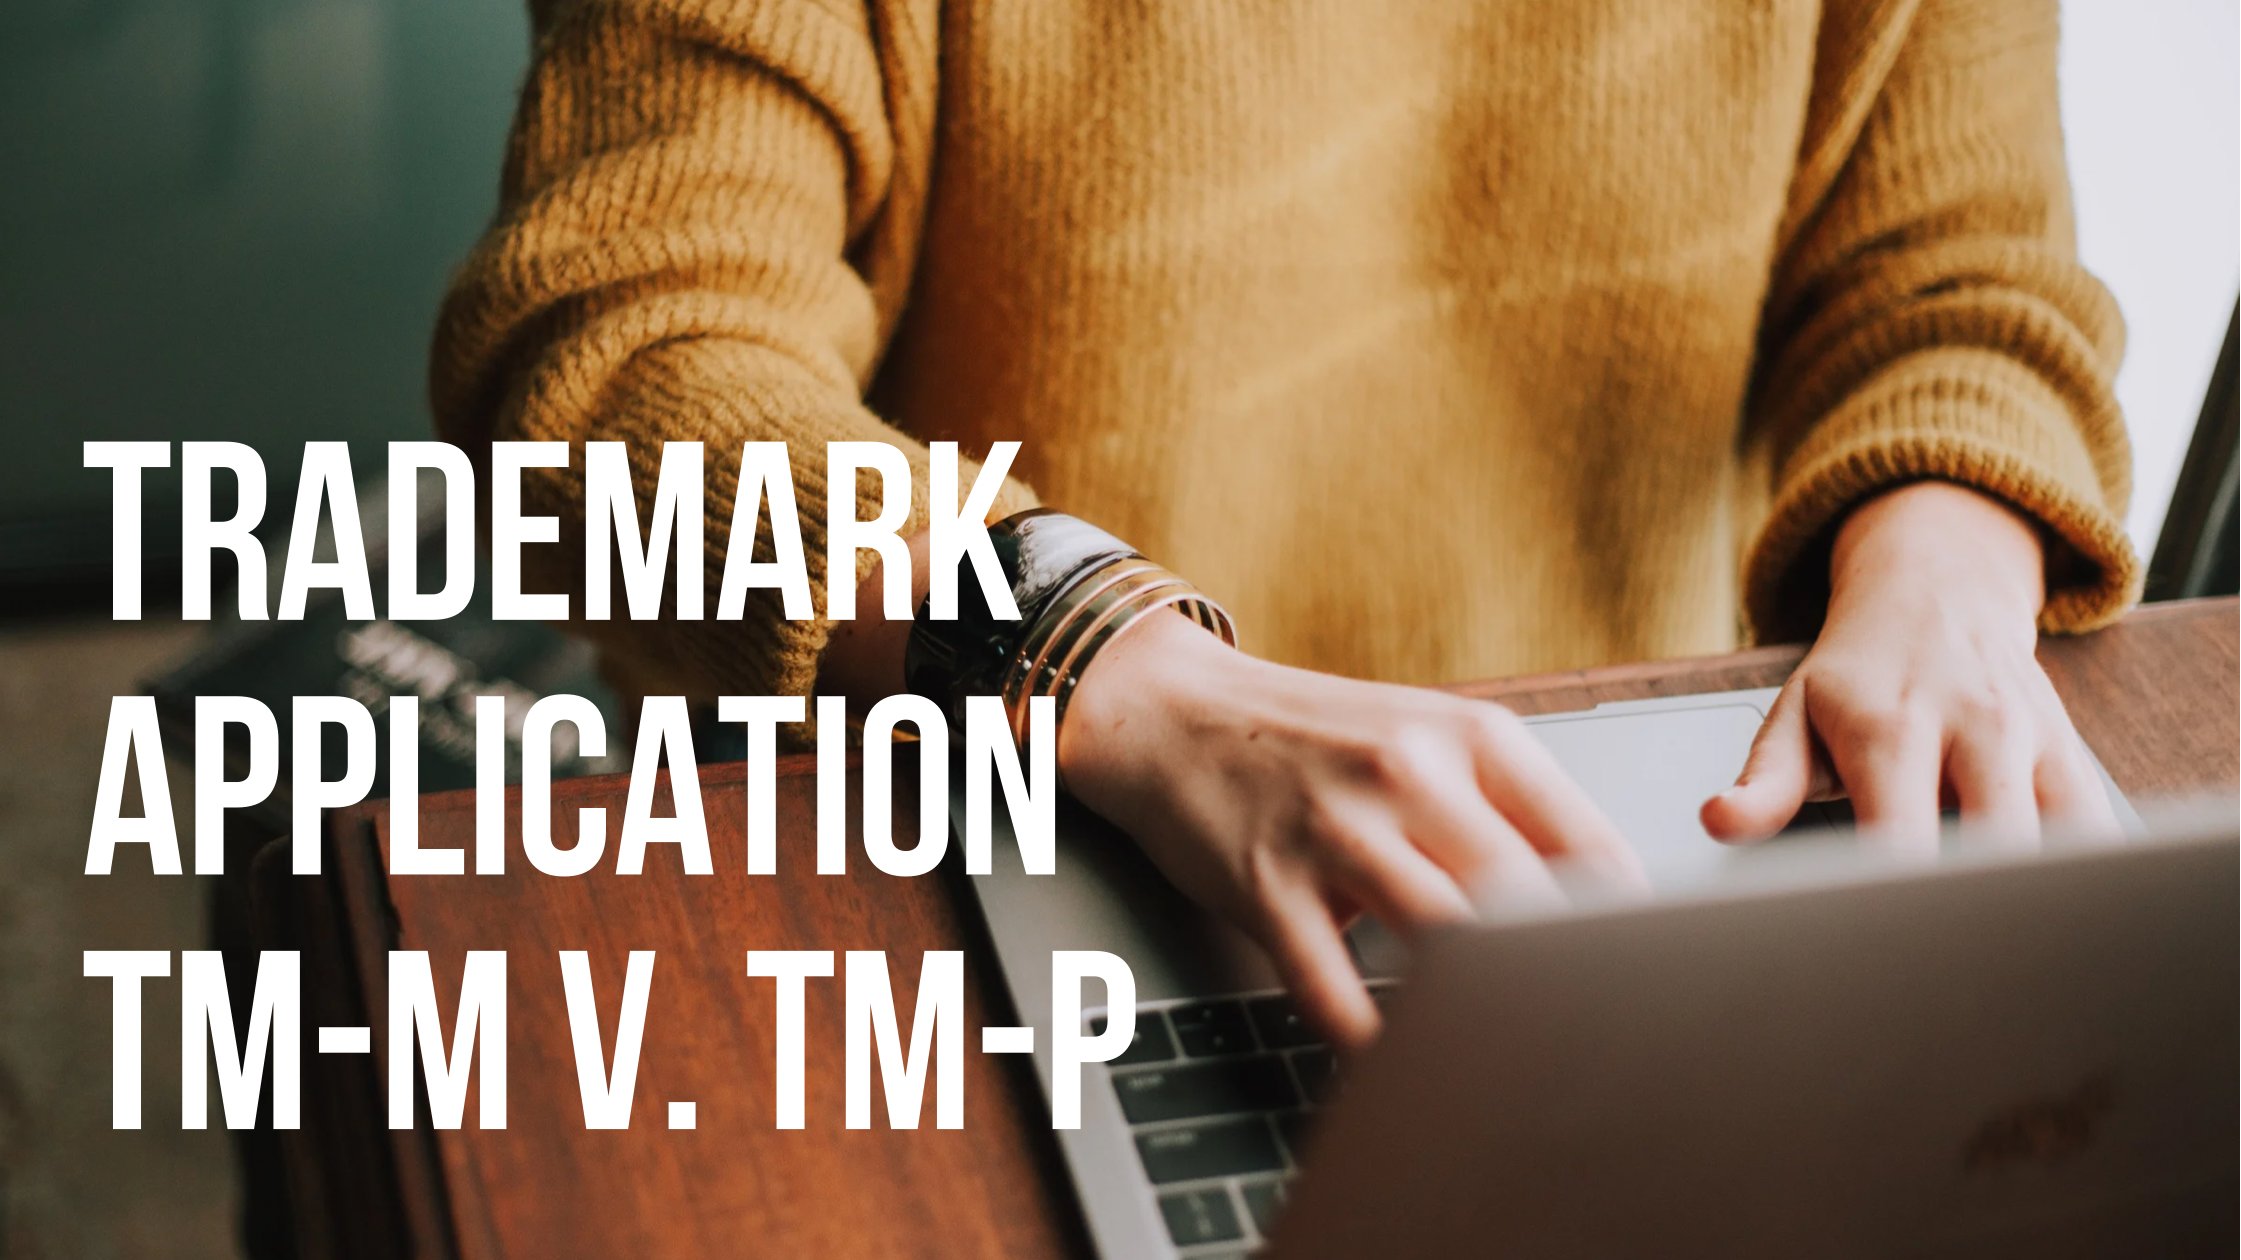 TRADEMARK APPLICATION TM-M v. TM-P